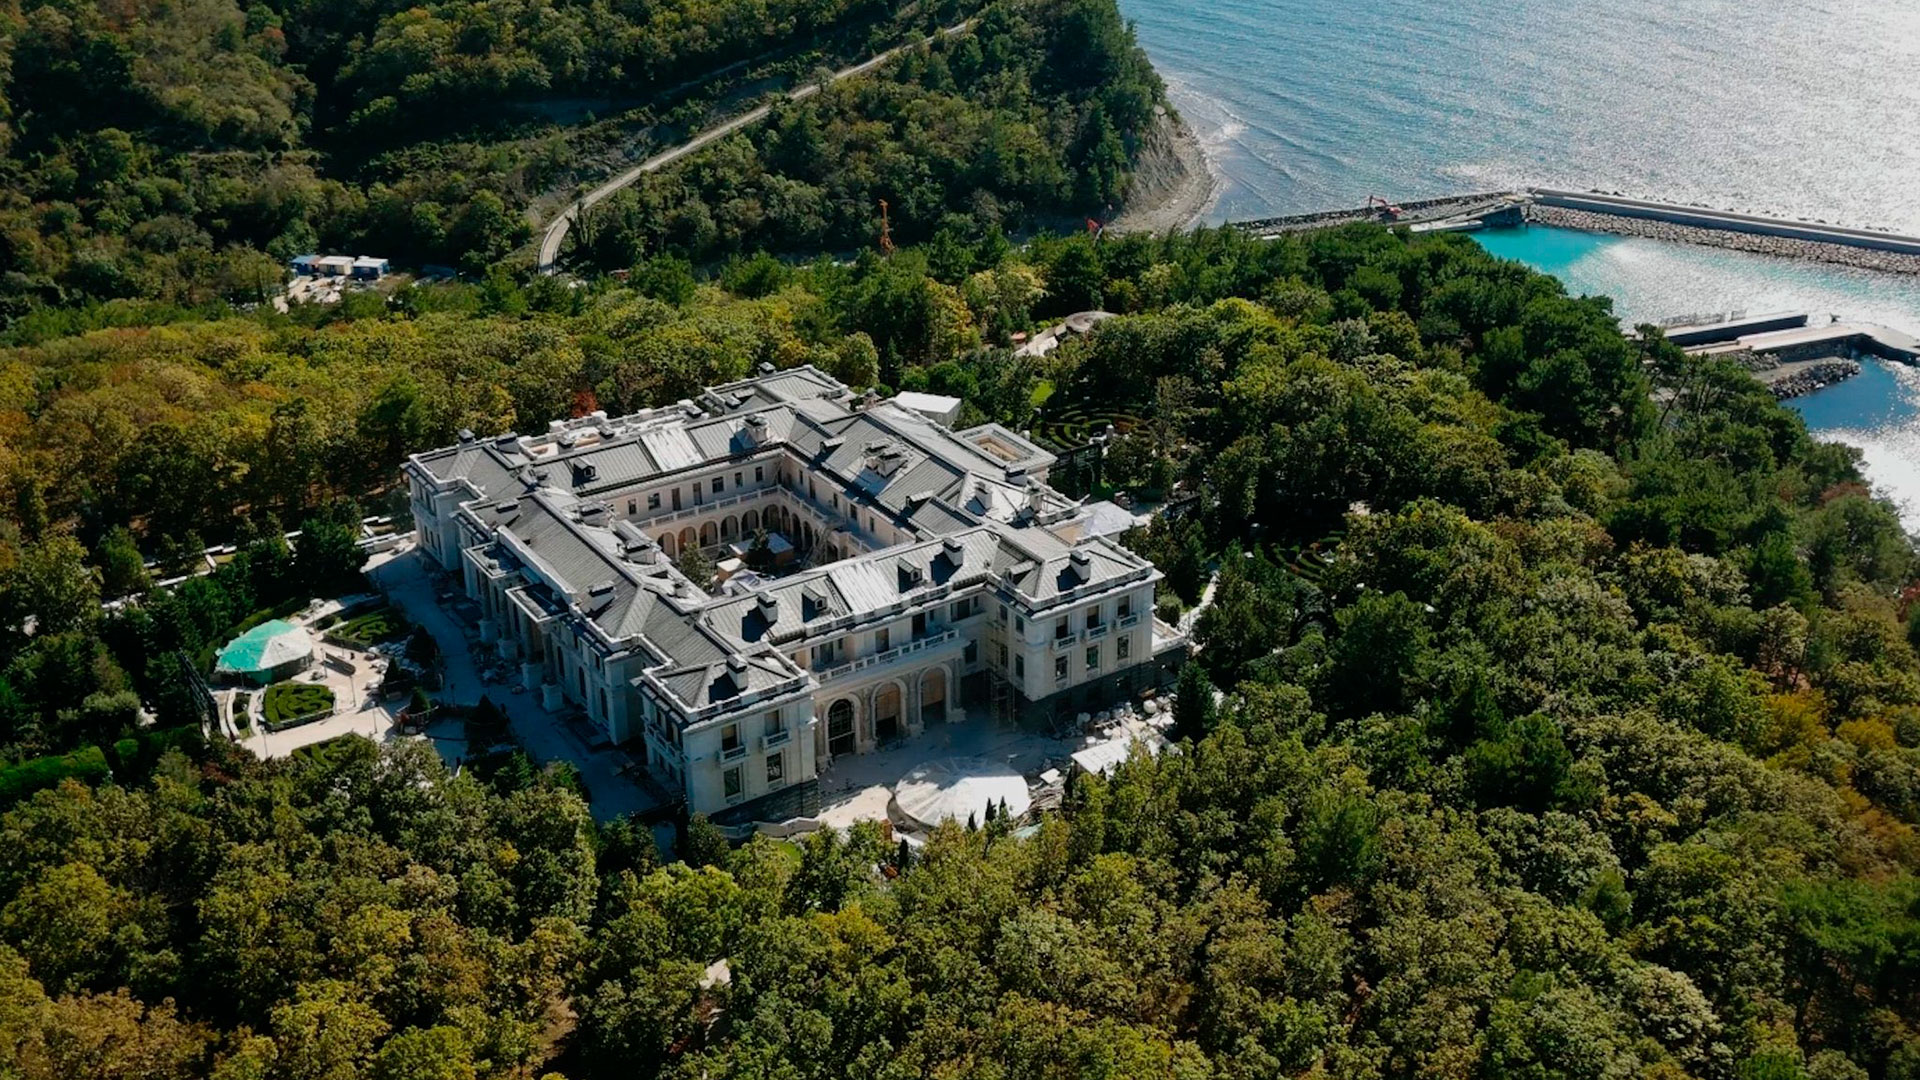 La gigantesca finca sobre las costas del Mar Negro conocida como el Palacio de Putin, cuya construcción habría costado más de 1.000 millones de dólares